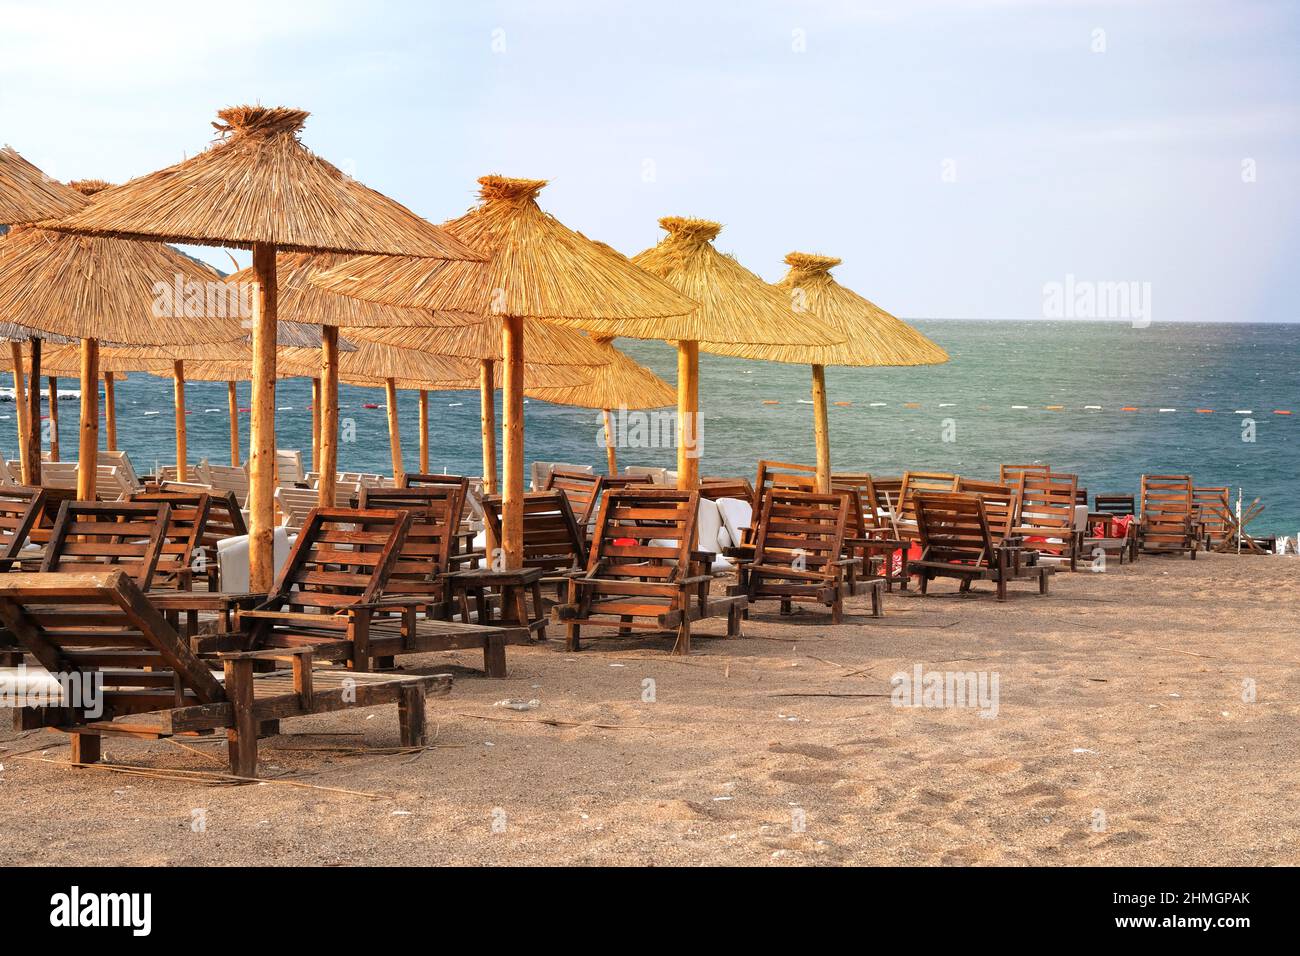 Strohschirme auf tropischem, idyllischem Resort. Blaues Meer und Himmel mit sanftgelbem Sonnenlicht. Stockfoto